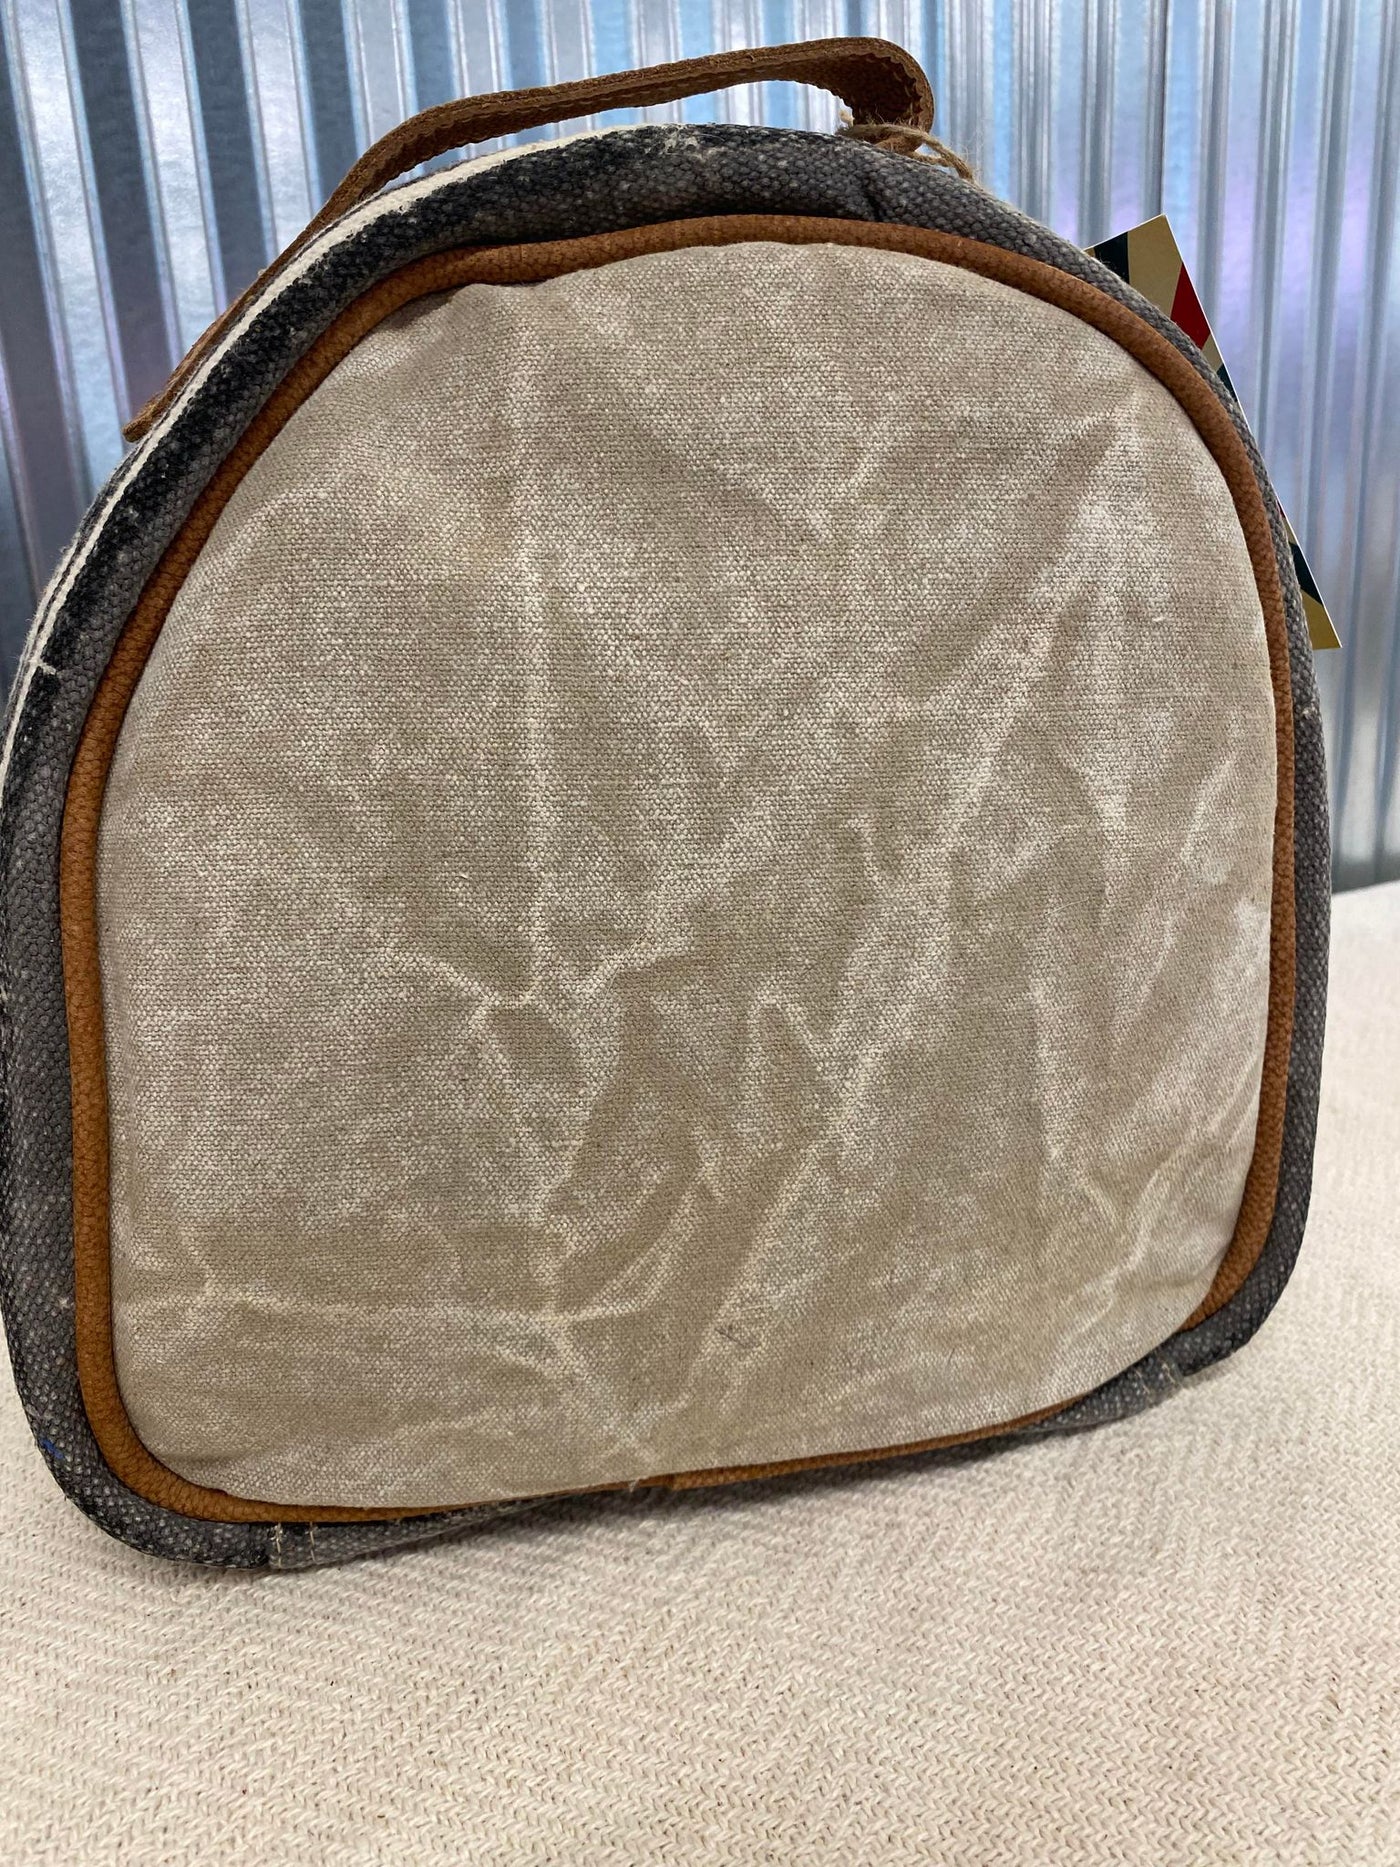 Backpack Shaped Makeup Bag  OHV247-B